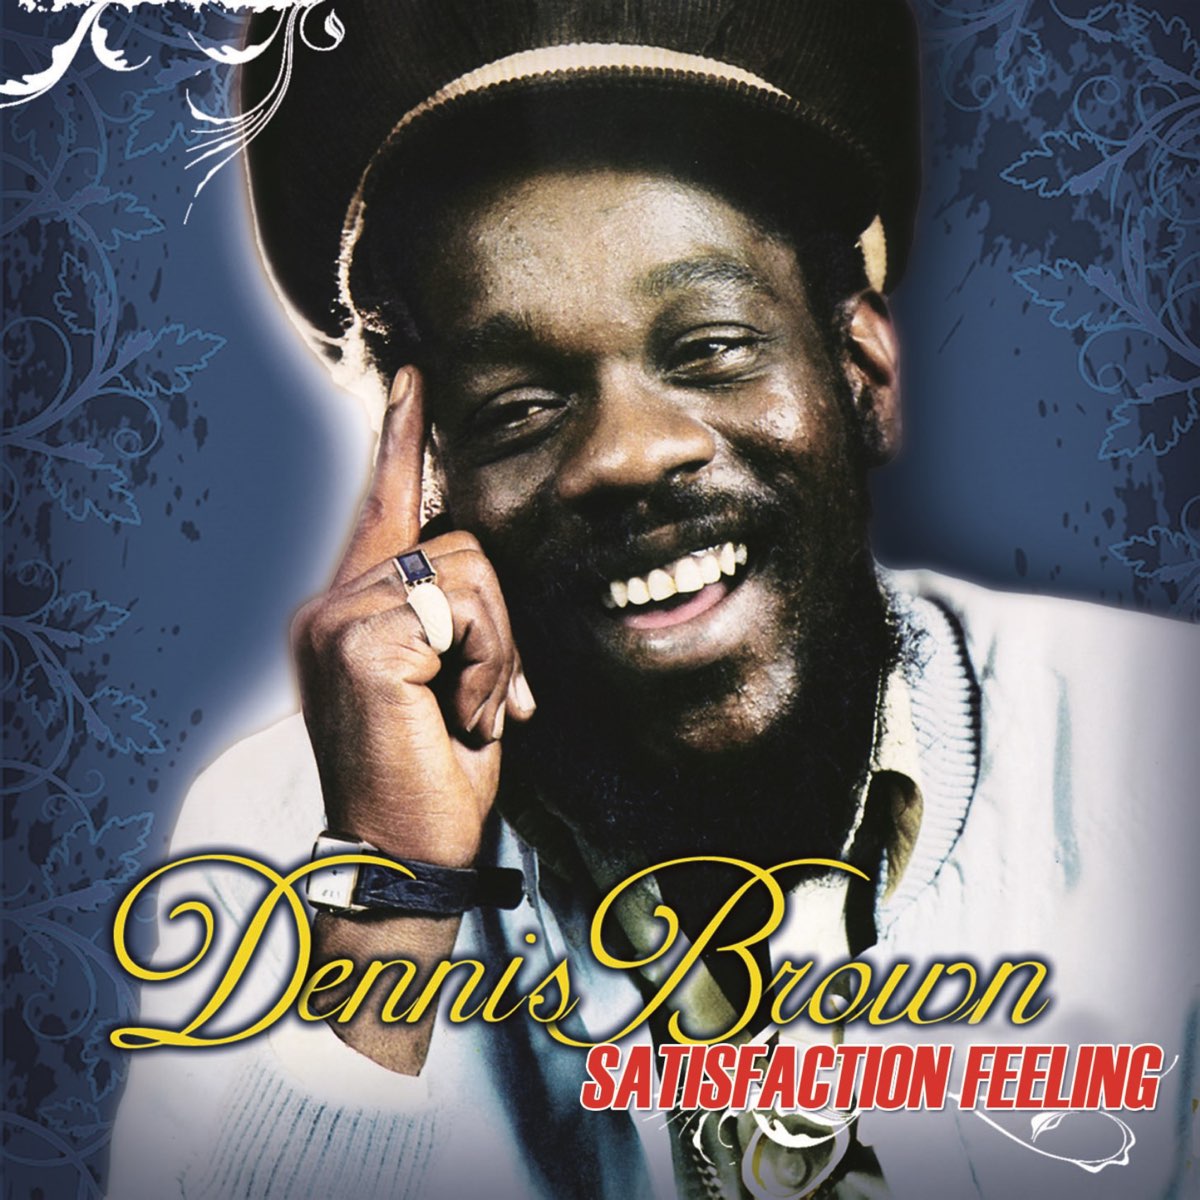 Dennis Brown - satisfaction feeling. Dennis Brown - satisfaction feeling (1984). Dennis Brown - Revolution (1985). Satisfying feeling. Feeling of satisfaction